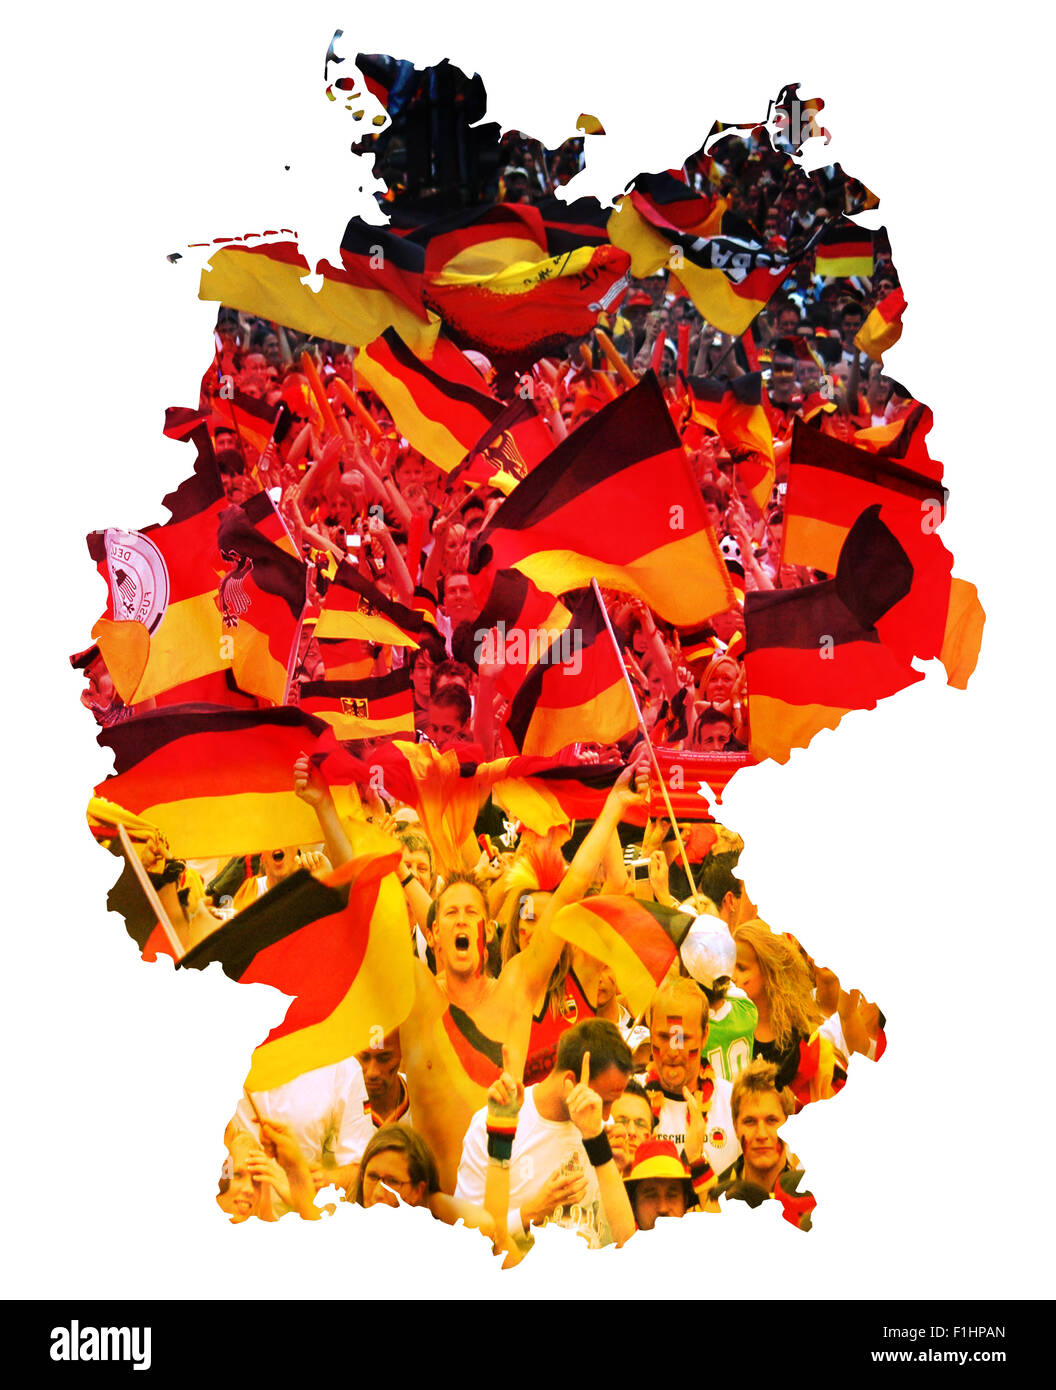 Symbolbild: Bundesrepublik Deutschland: Laenderumriss mit Flagge und jubelnden Fussballfans/ imagen simbólica: República Federal de Foto de stock